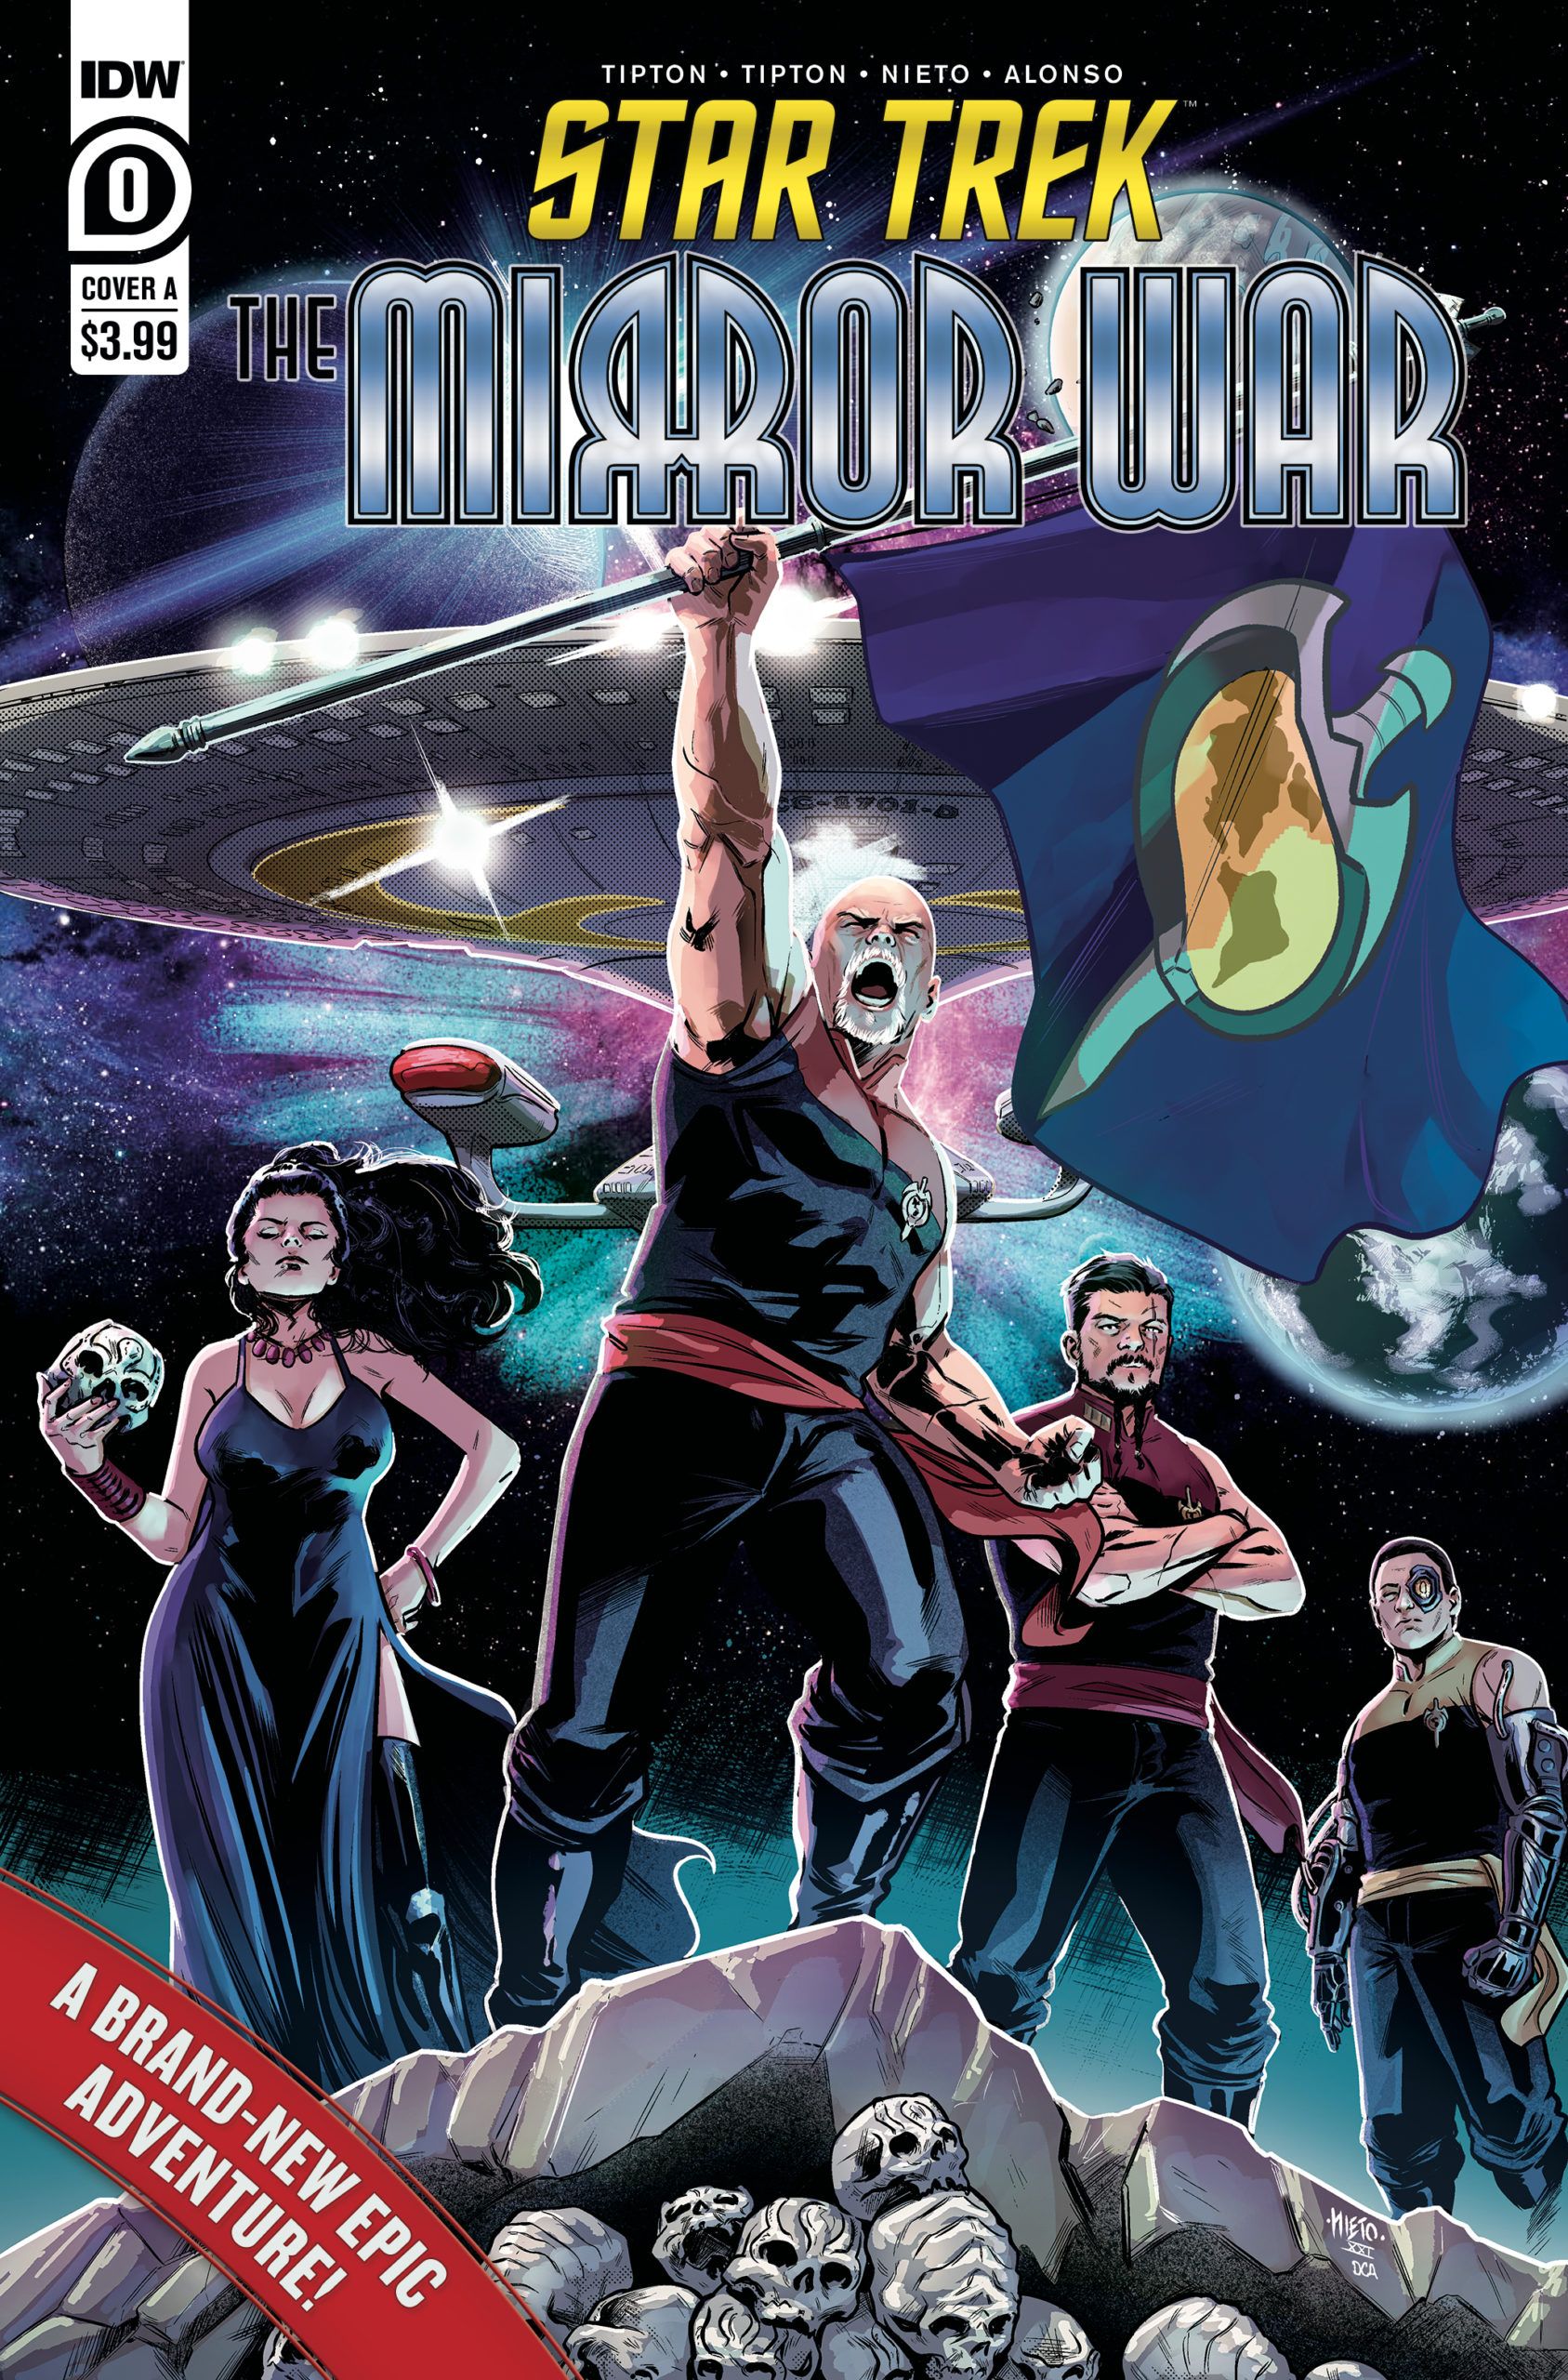 Star Trek: The Mirror War #0 (@IDWPublishing) New Comics